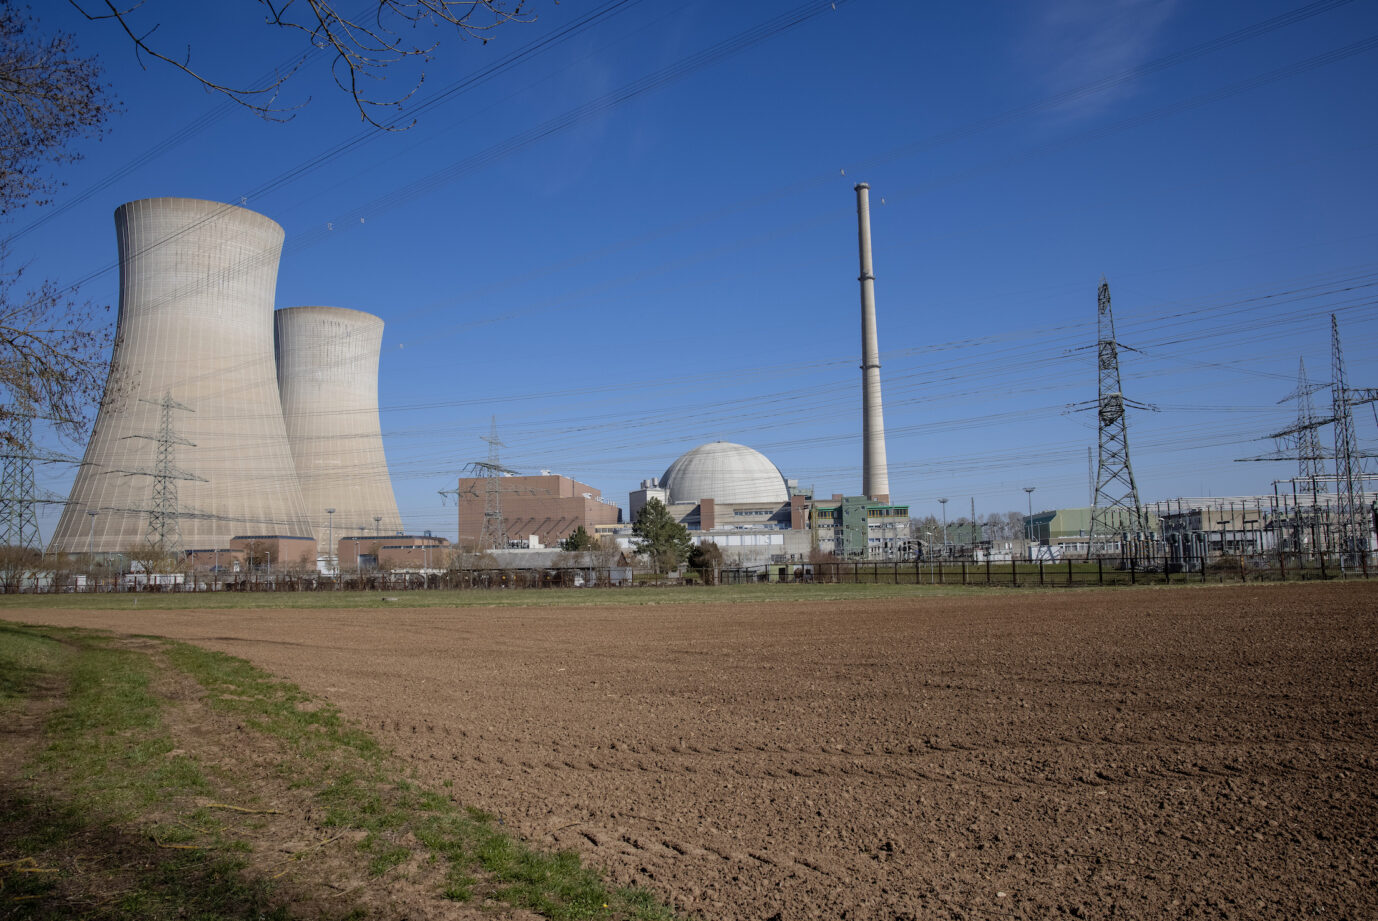 Atomkraftwerk in Deutschland: Nach dem Willen der Propagandisten der Energiewende soll auf Kernkraft verzichtet werden Foto: picture alliance / HMB Media/ Heiko Becker | Heiko Becker